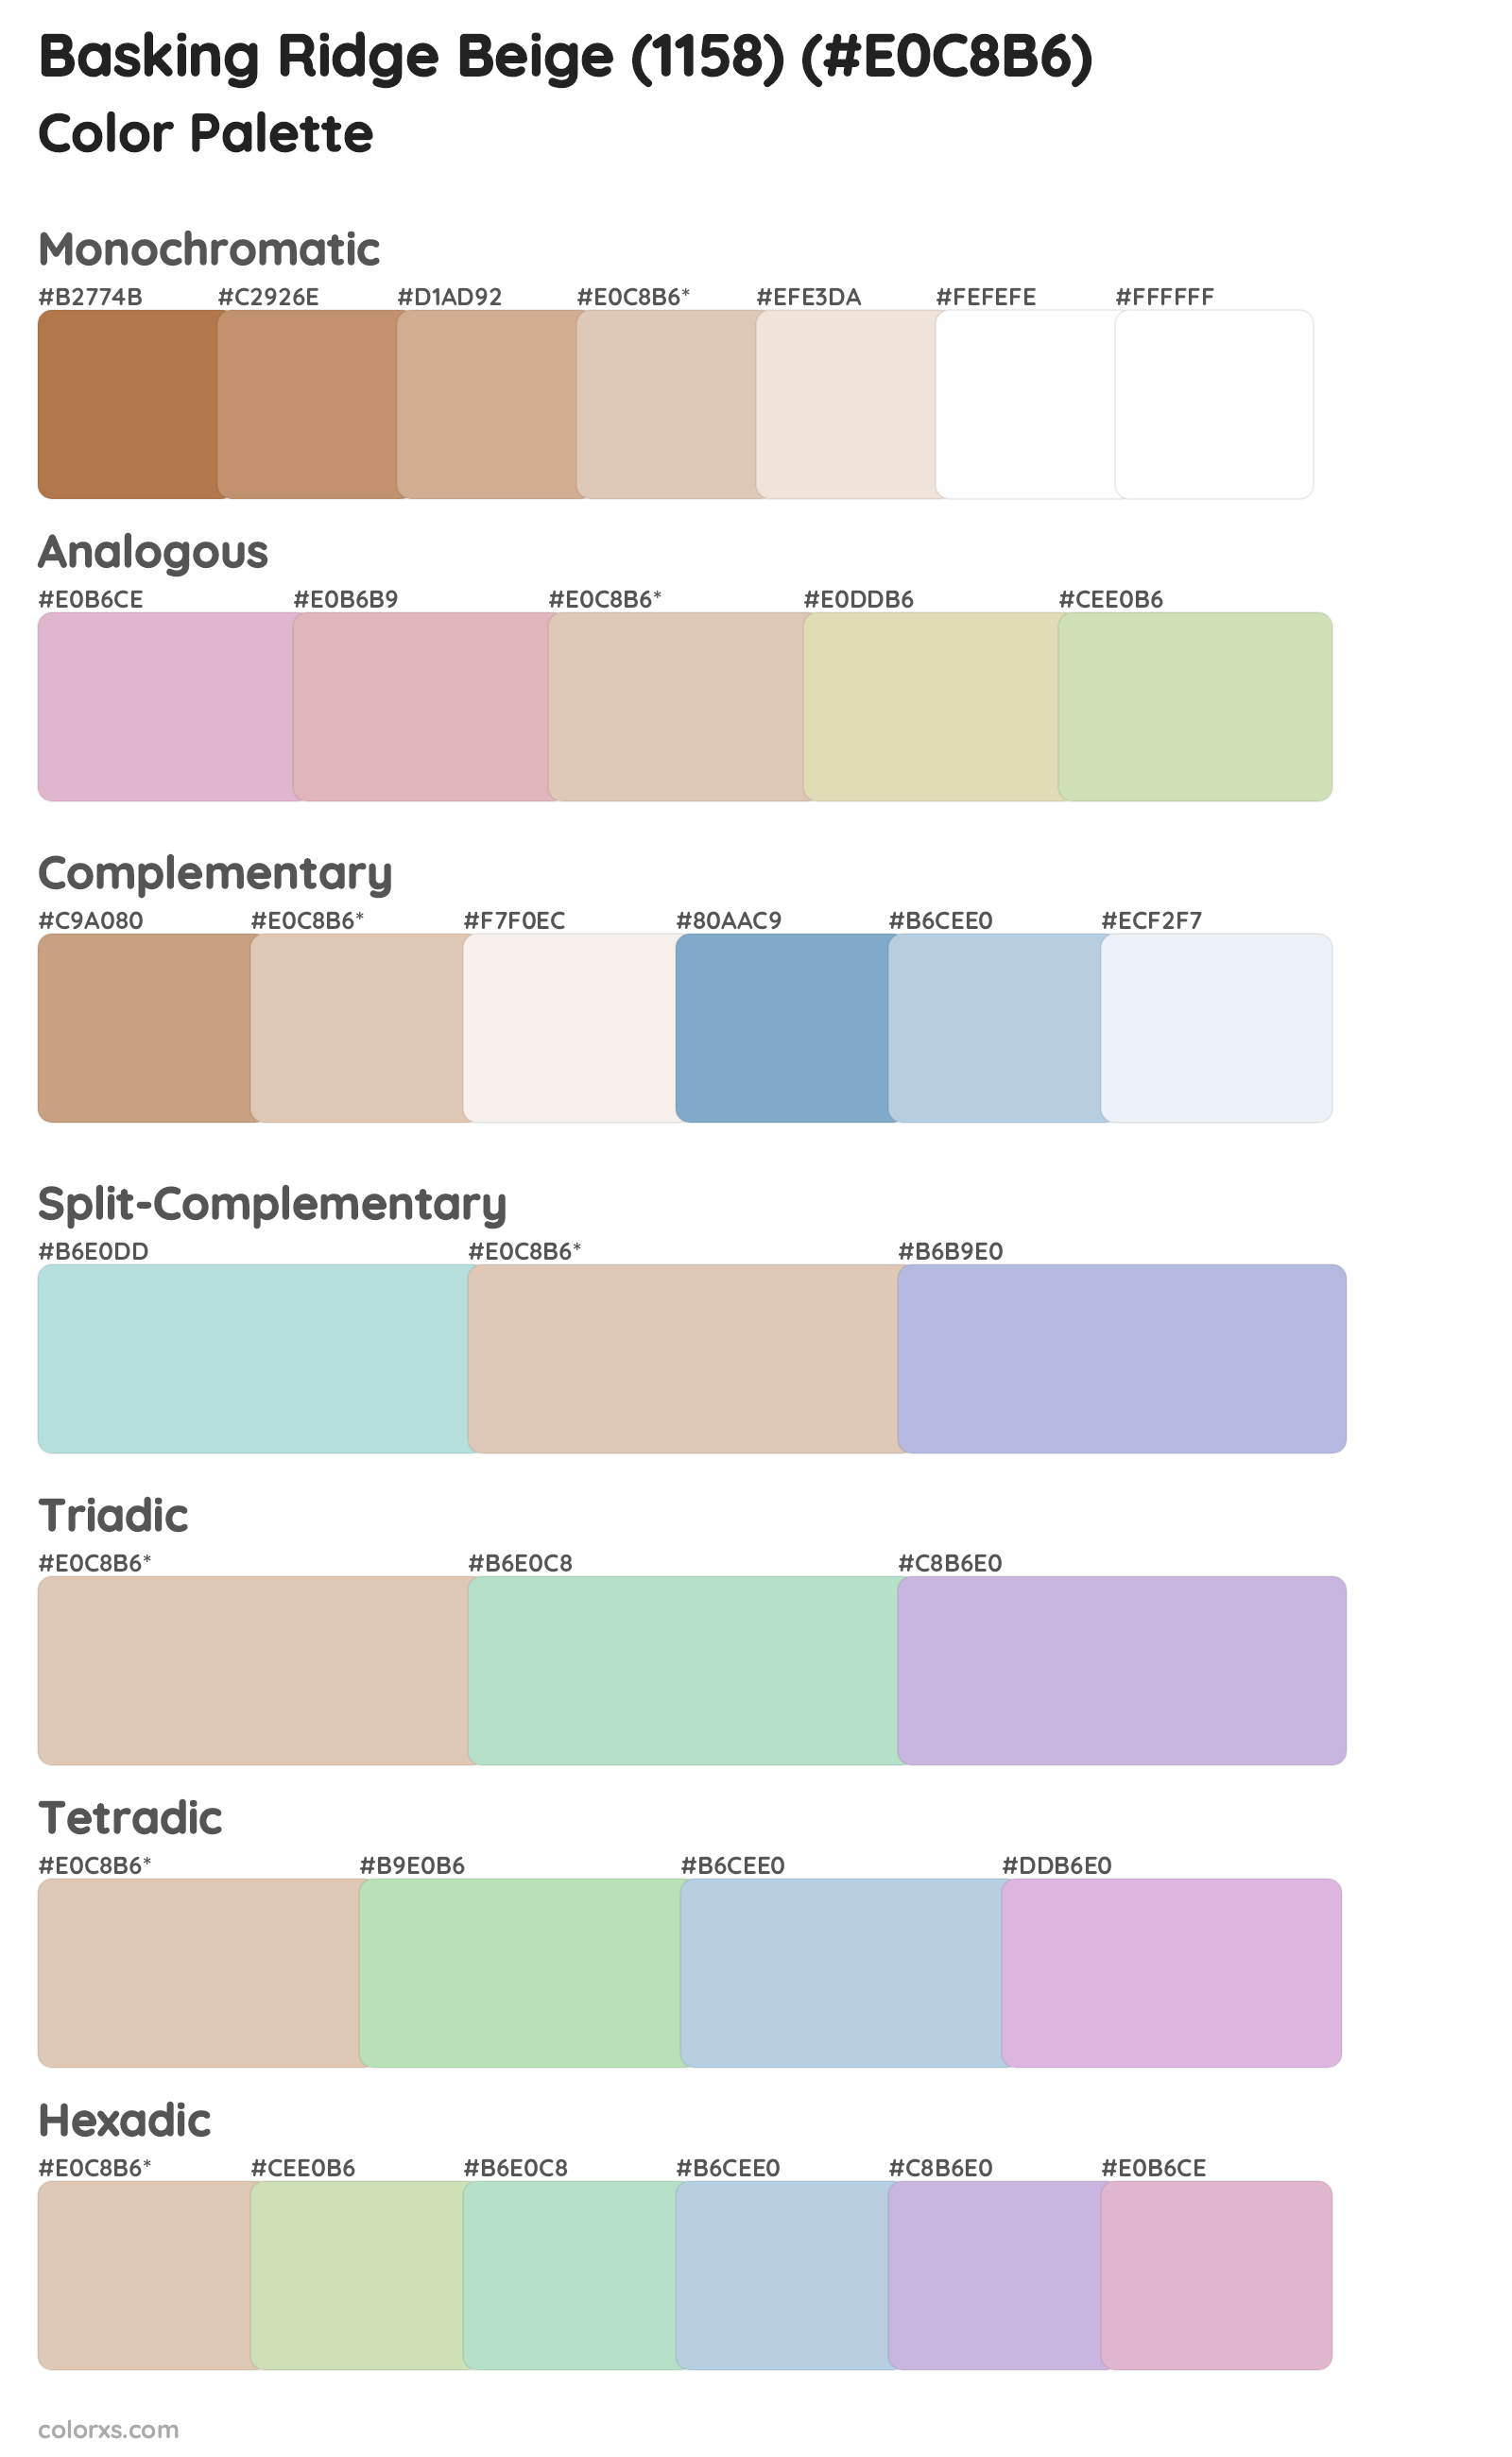 Basking Ridge Beige (1158) Color Scheme Palettes